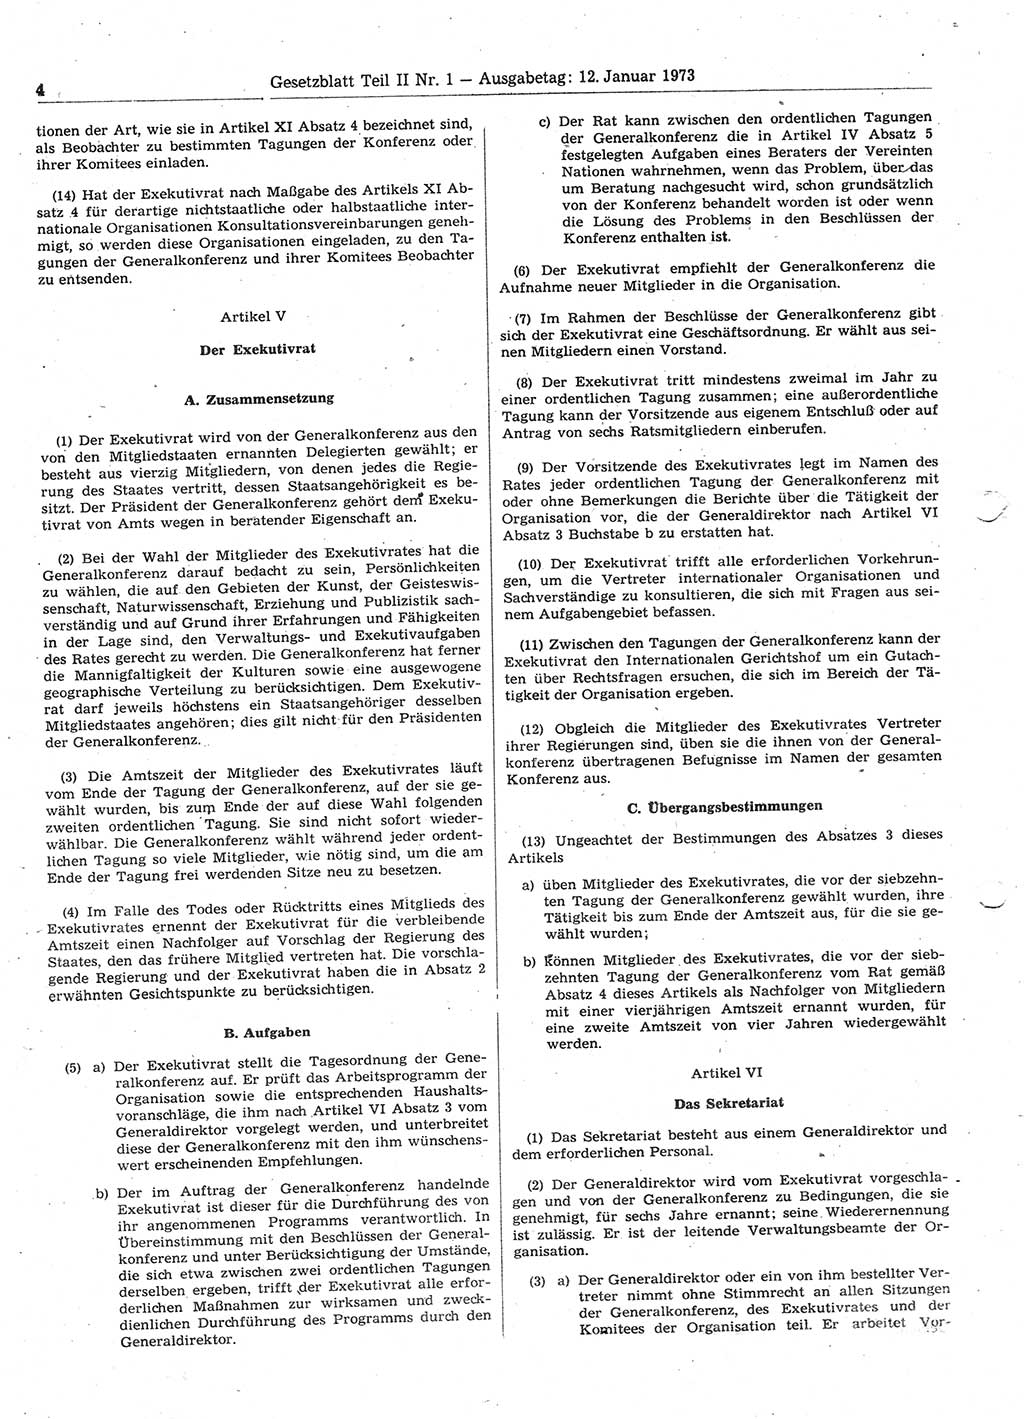 Gesetzblatt (GBl.) der Deutschen Demokratischen Republik (DDR) Teil ⅠⅠ 1973, Seite 4 (GBl. DDR ⅠⅠ 1973, S. 4)